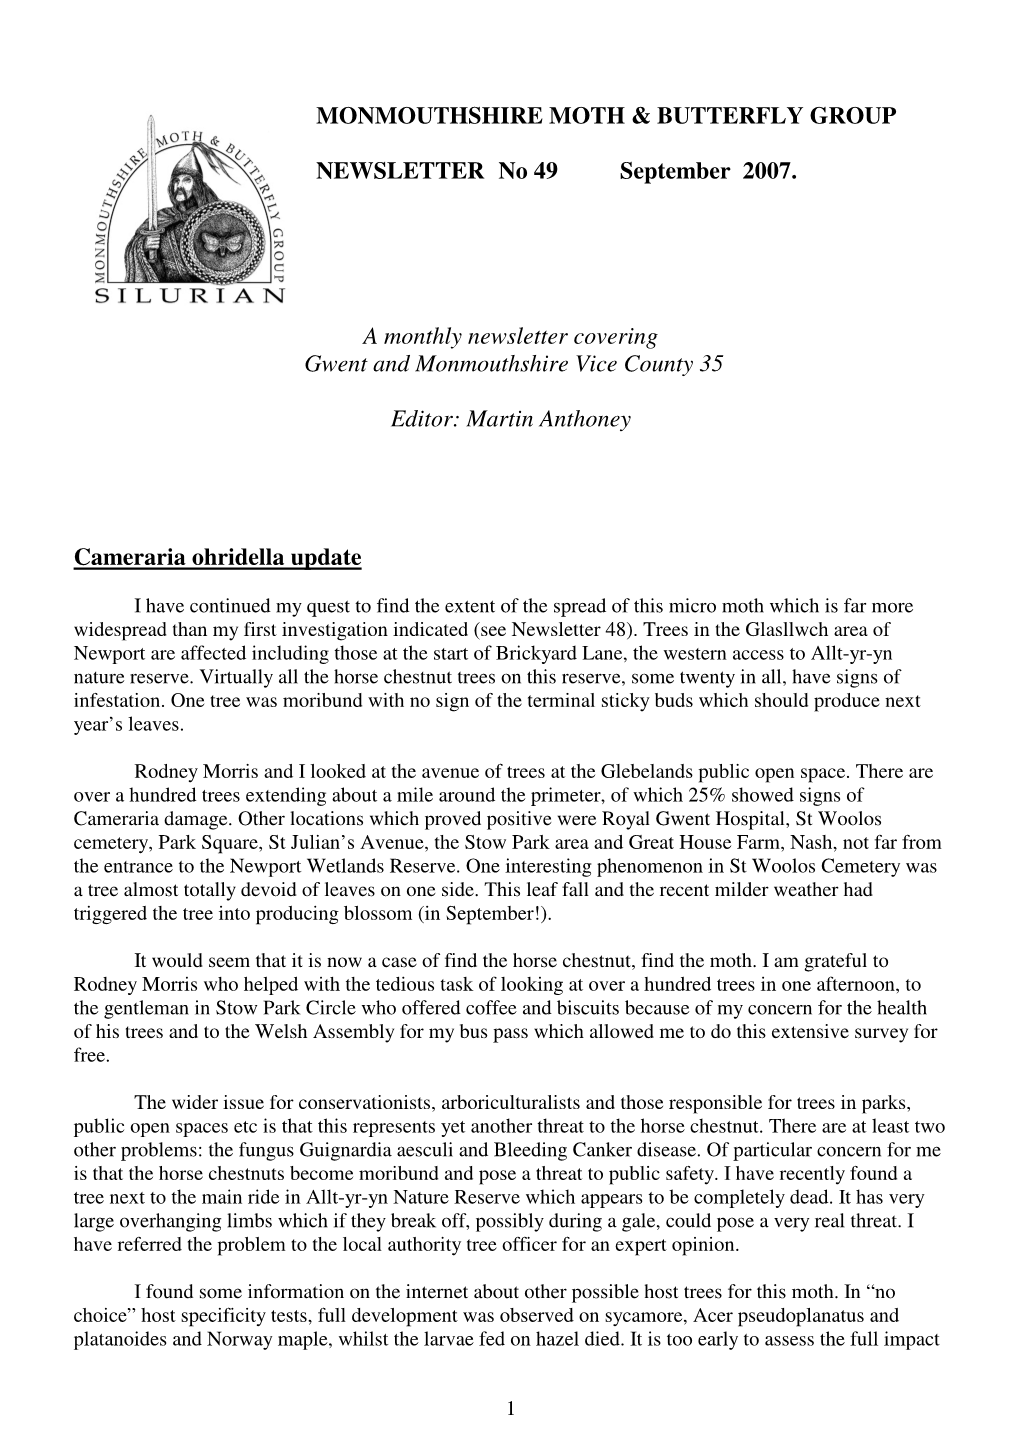 Newsletter 49, September 2007 (519Kb)